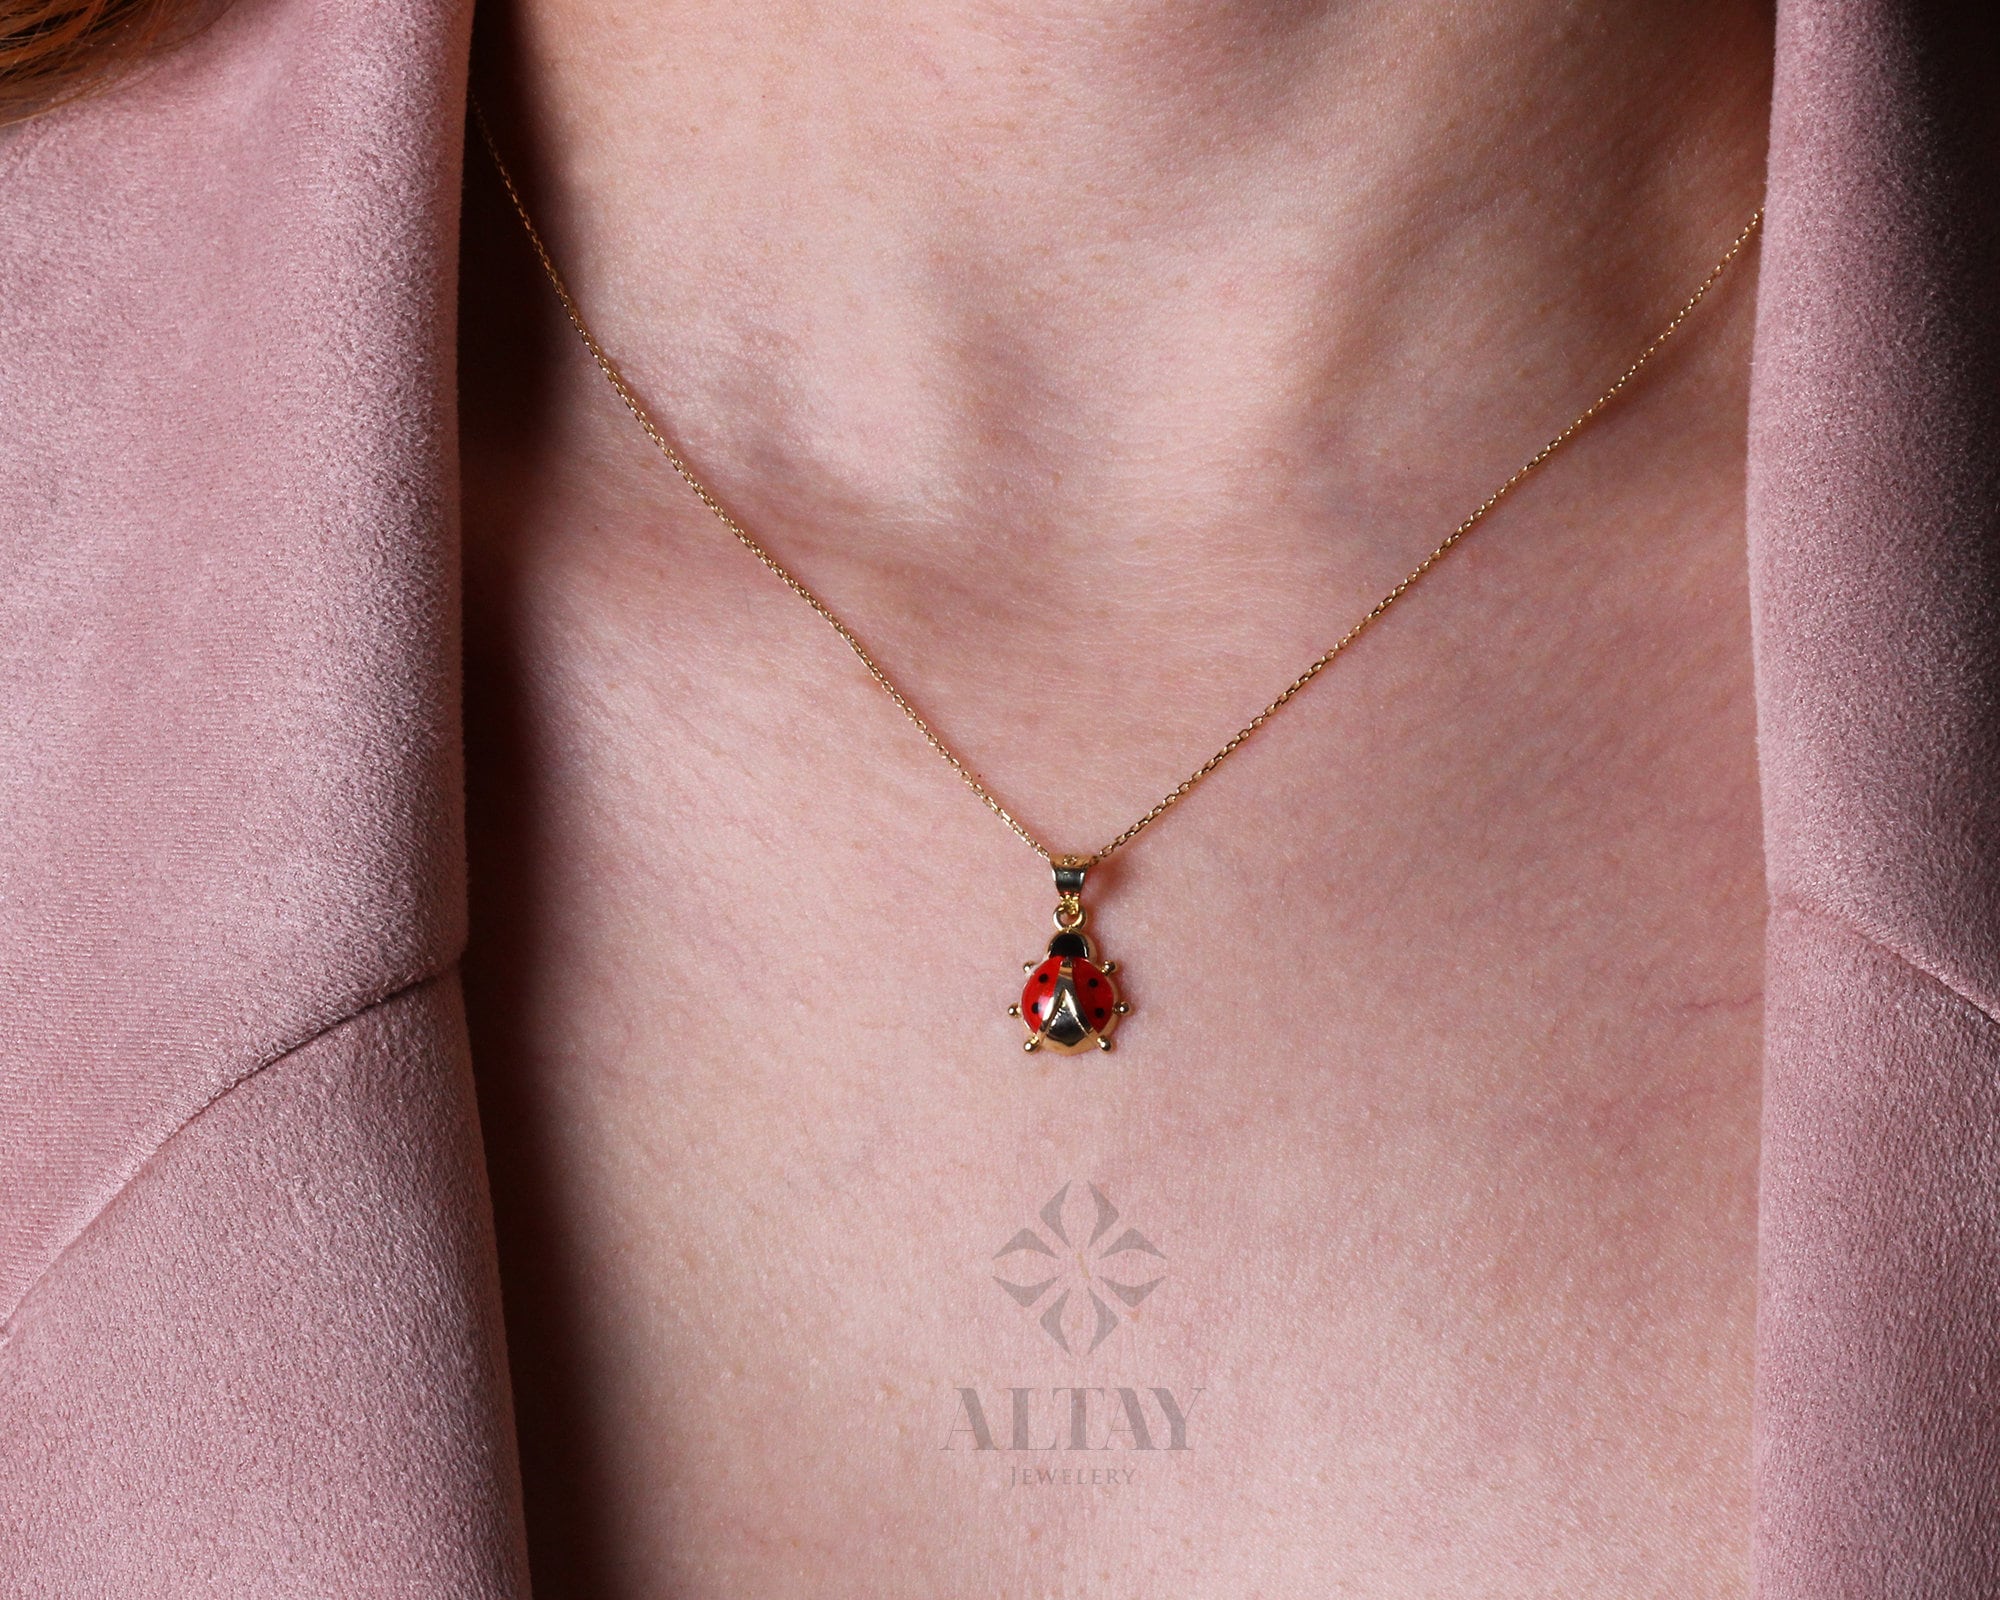 14K Gold Ladybug Necklace, Tiny Ladybug Charm Pendant, Red Enamel Good Luck Necklace, Ladybird Lovers, Minimalist Gold Pendant